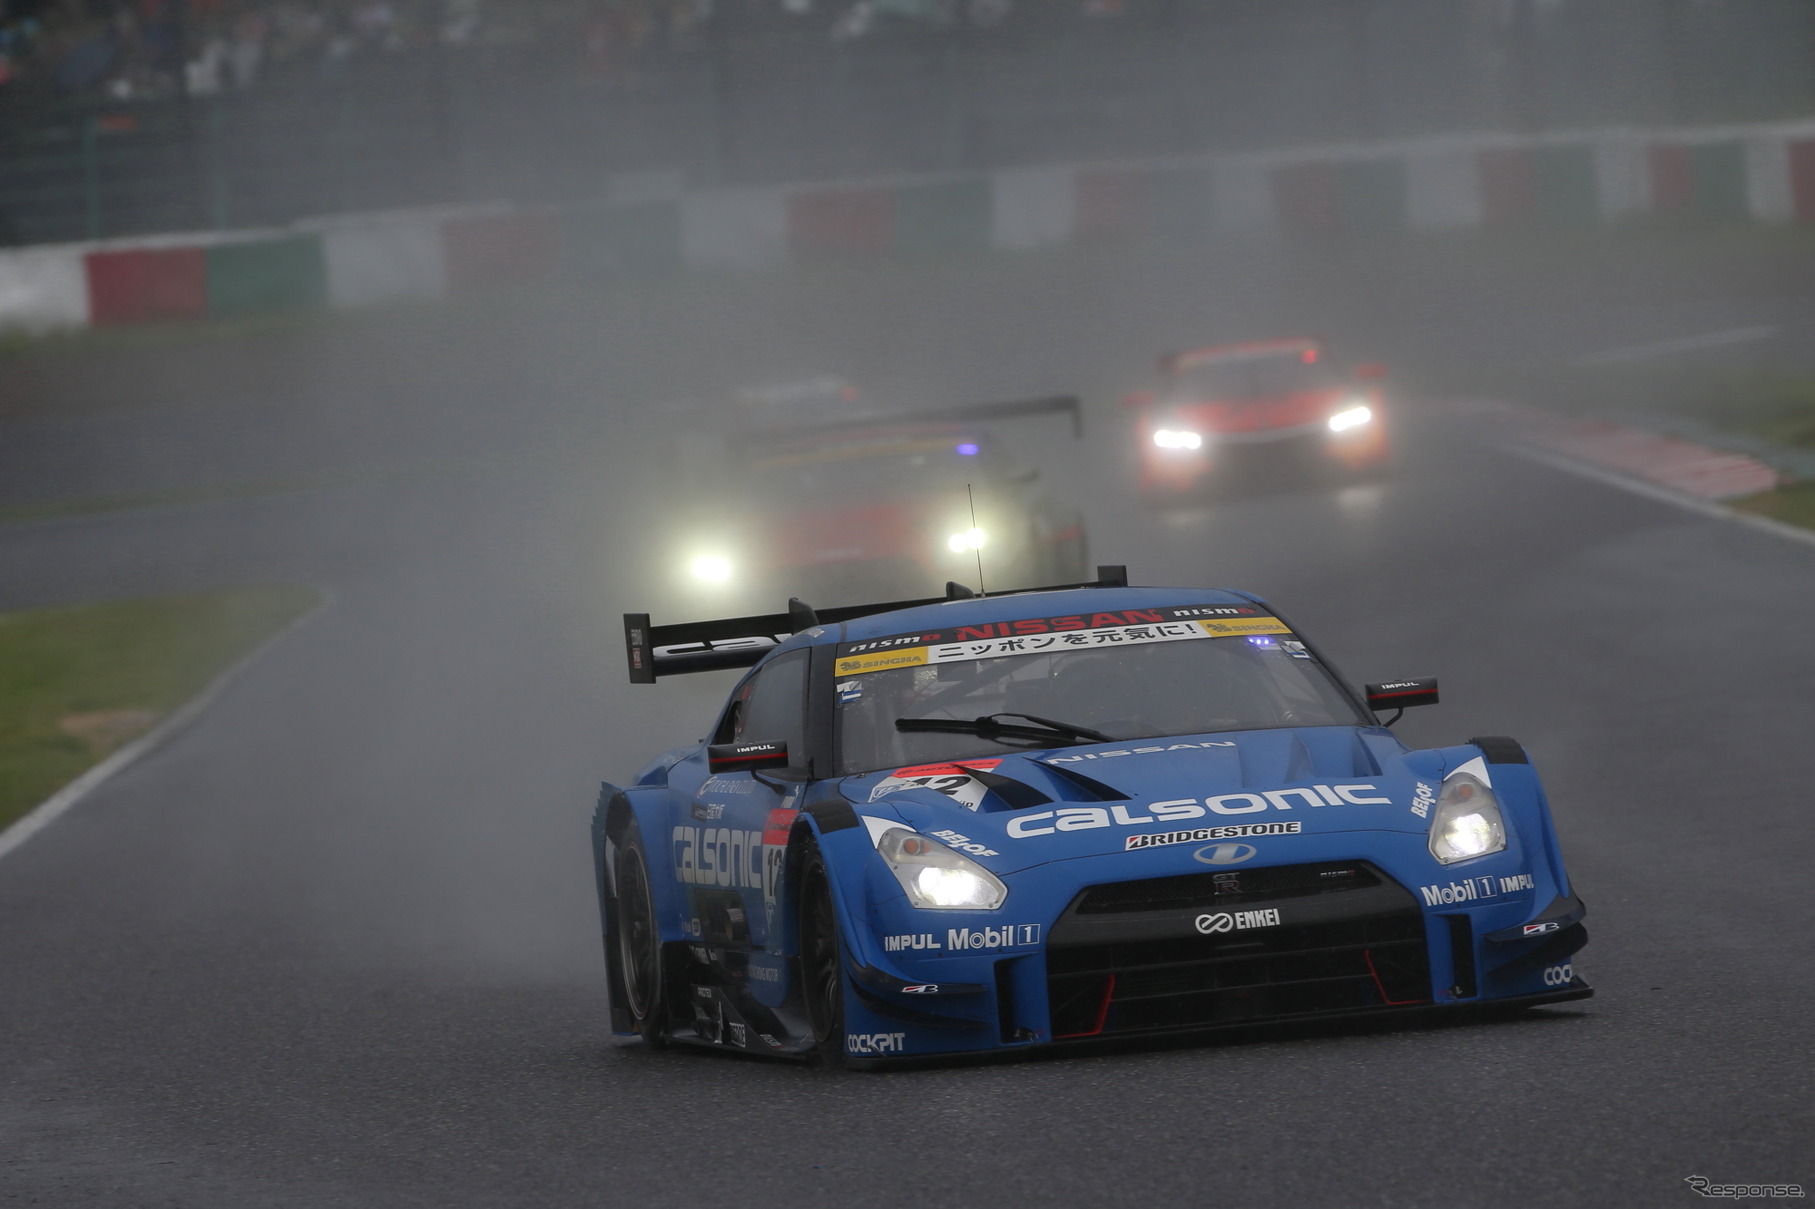 SUPER GT 第5戦 GT500クラス 決勝レース